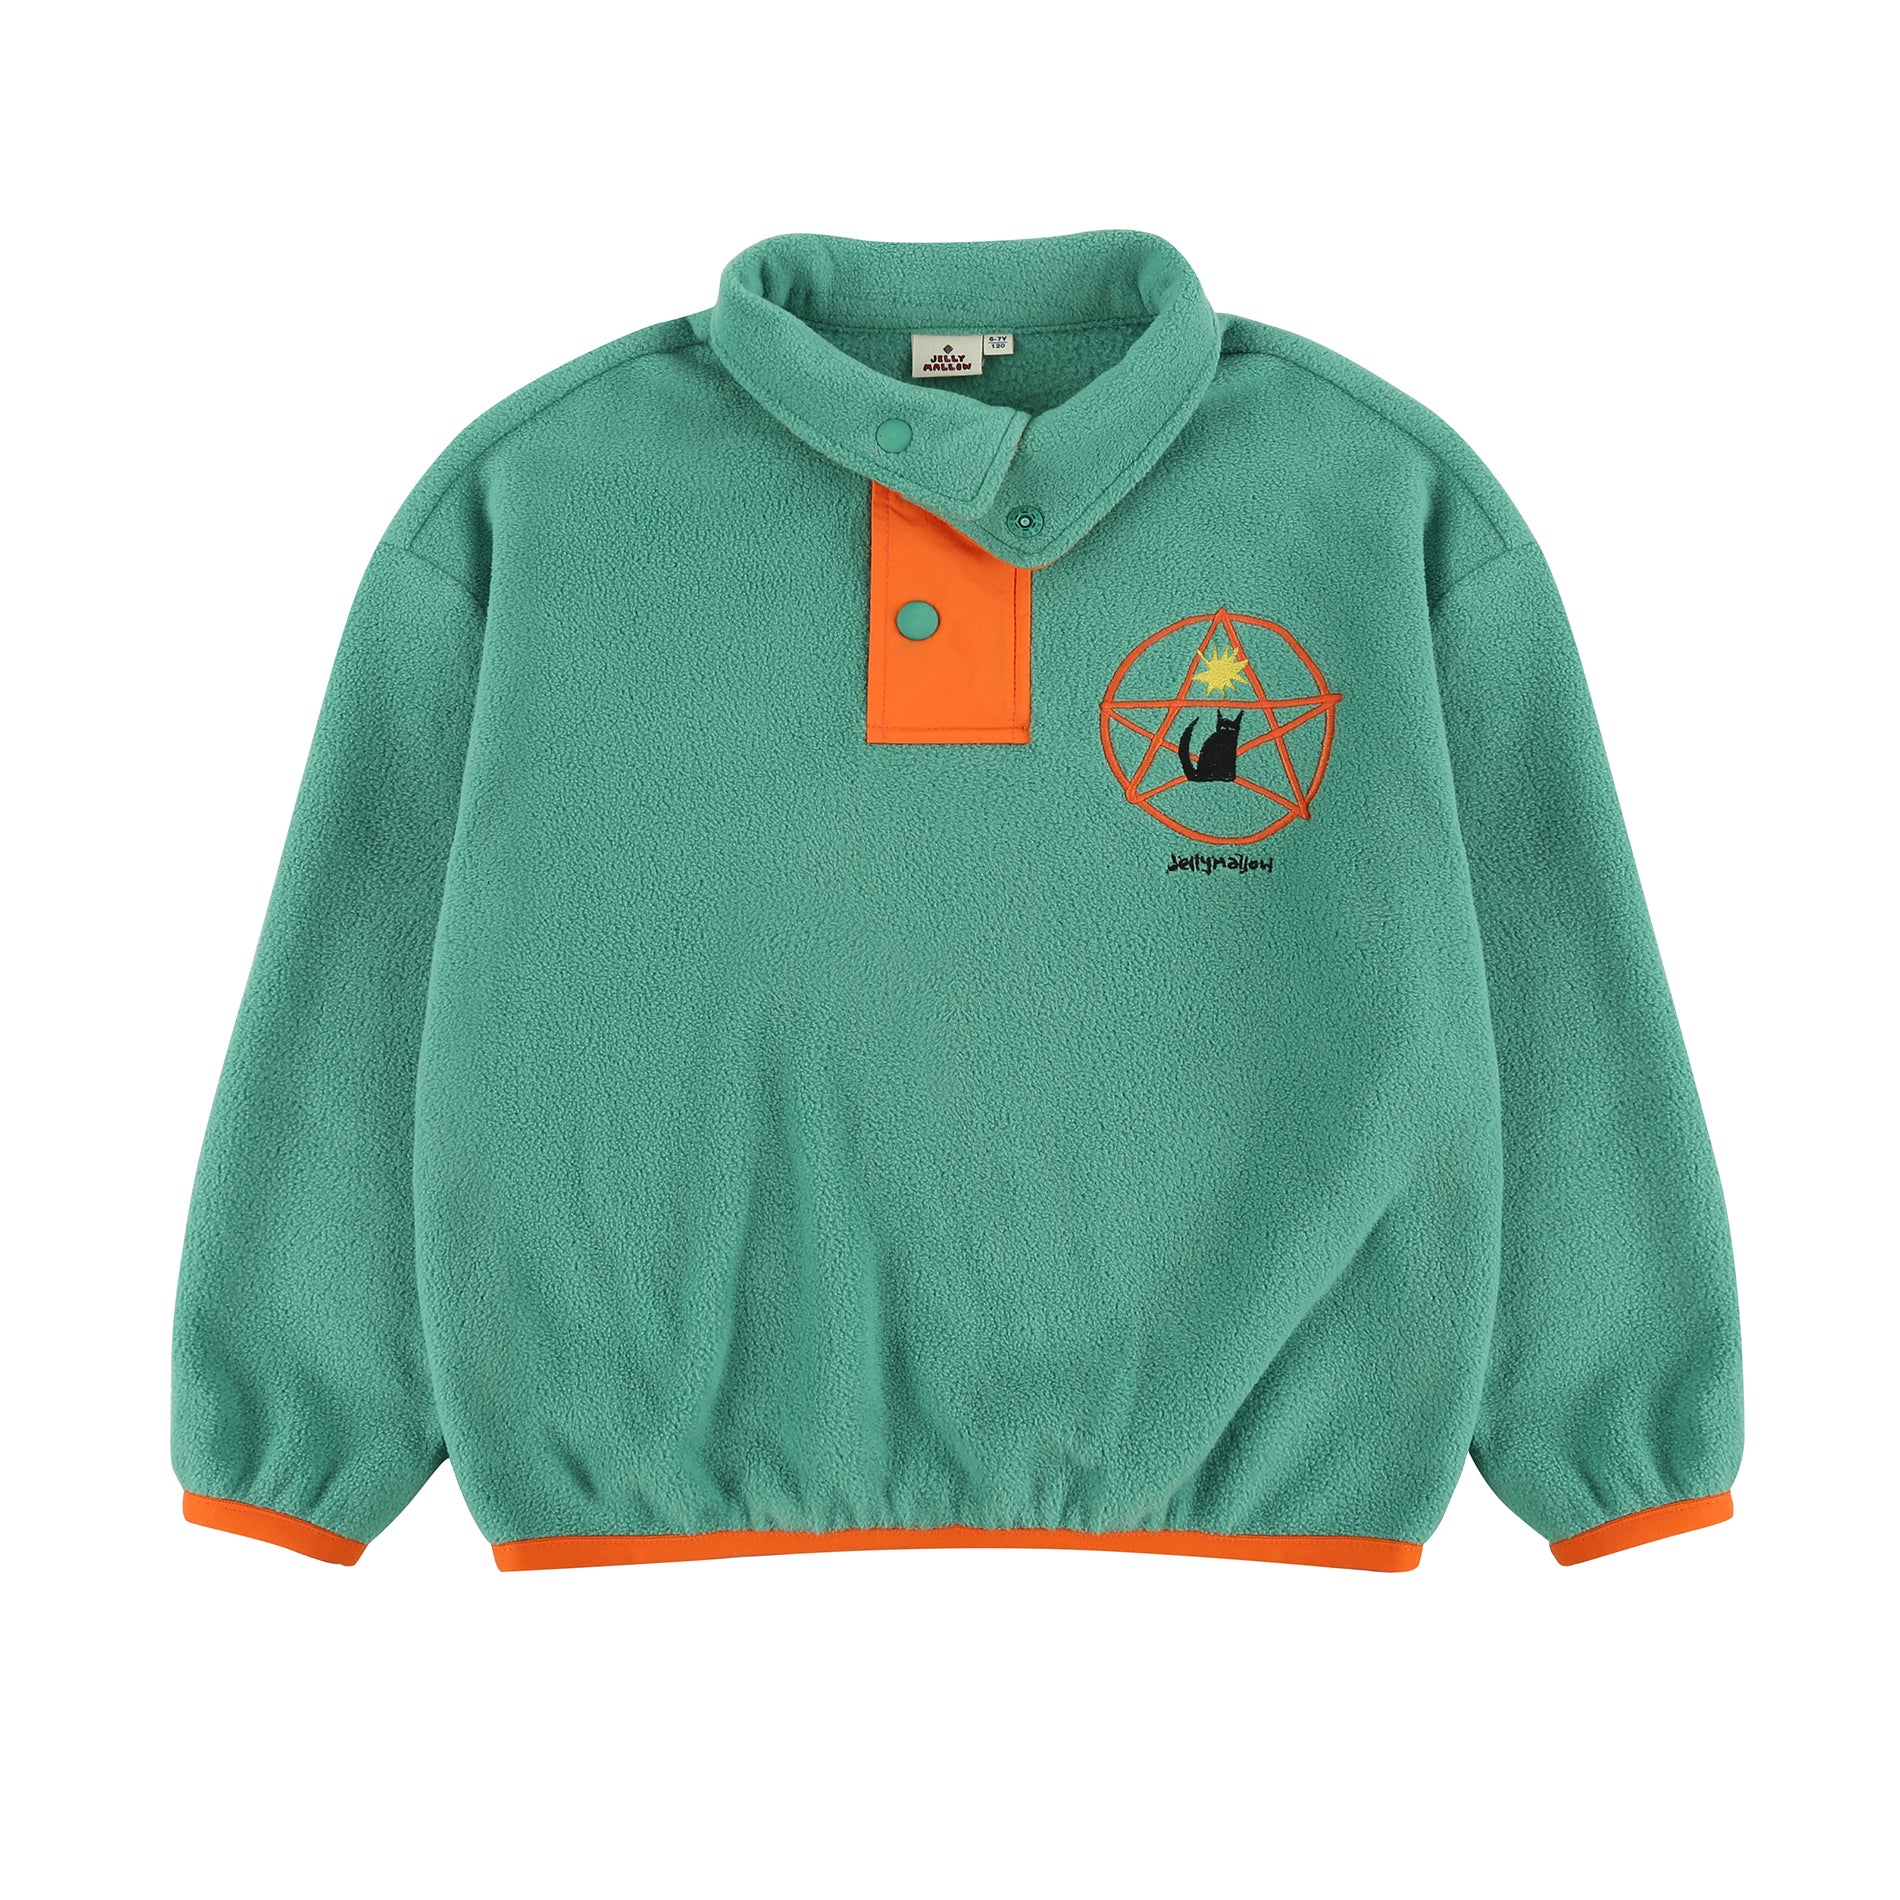 Boys & Girls Green Fleece Sweatshirt